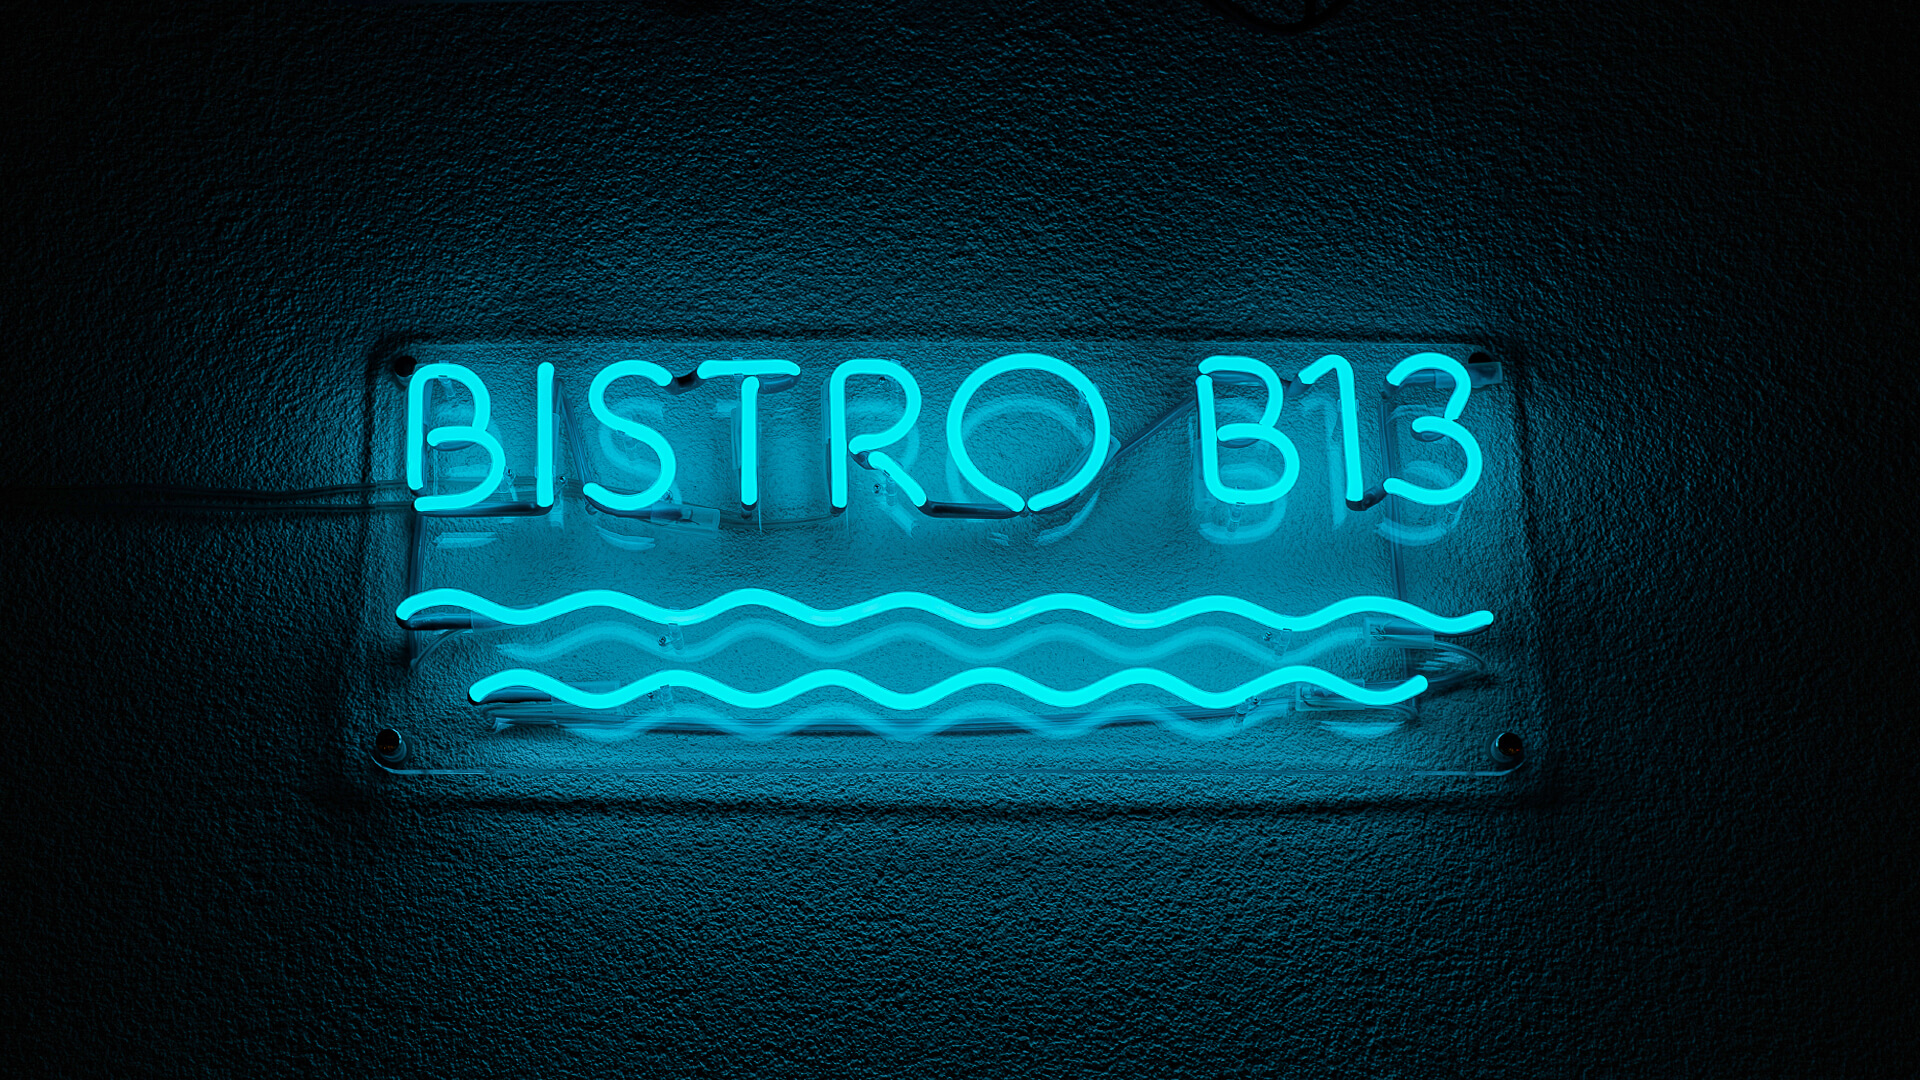 Bistro B13 - Blaues Neon-Bistro-Schild, mit Wellen unter der Aufschrift.